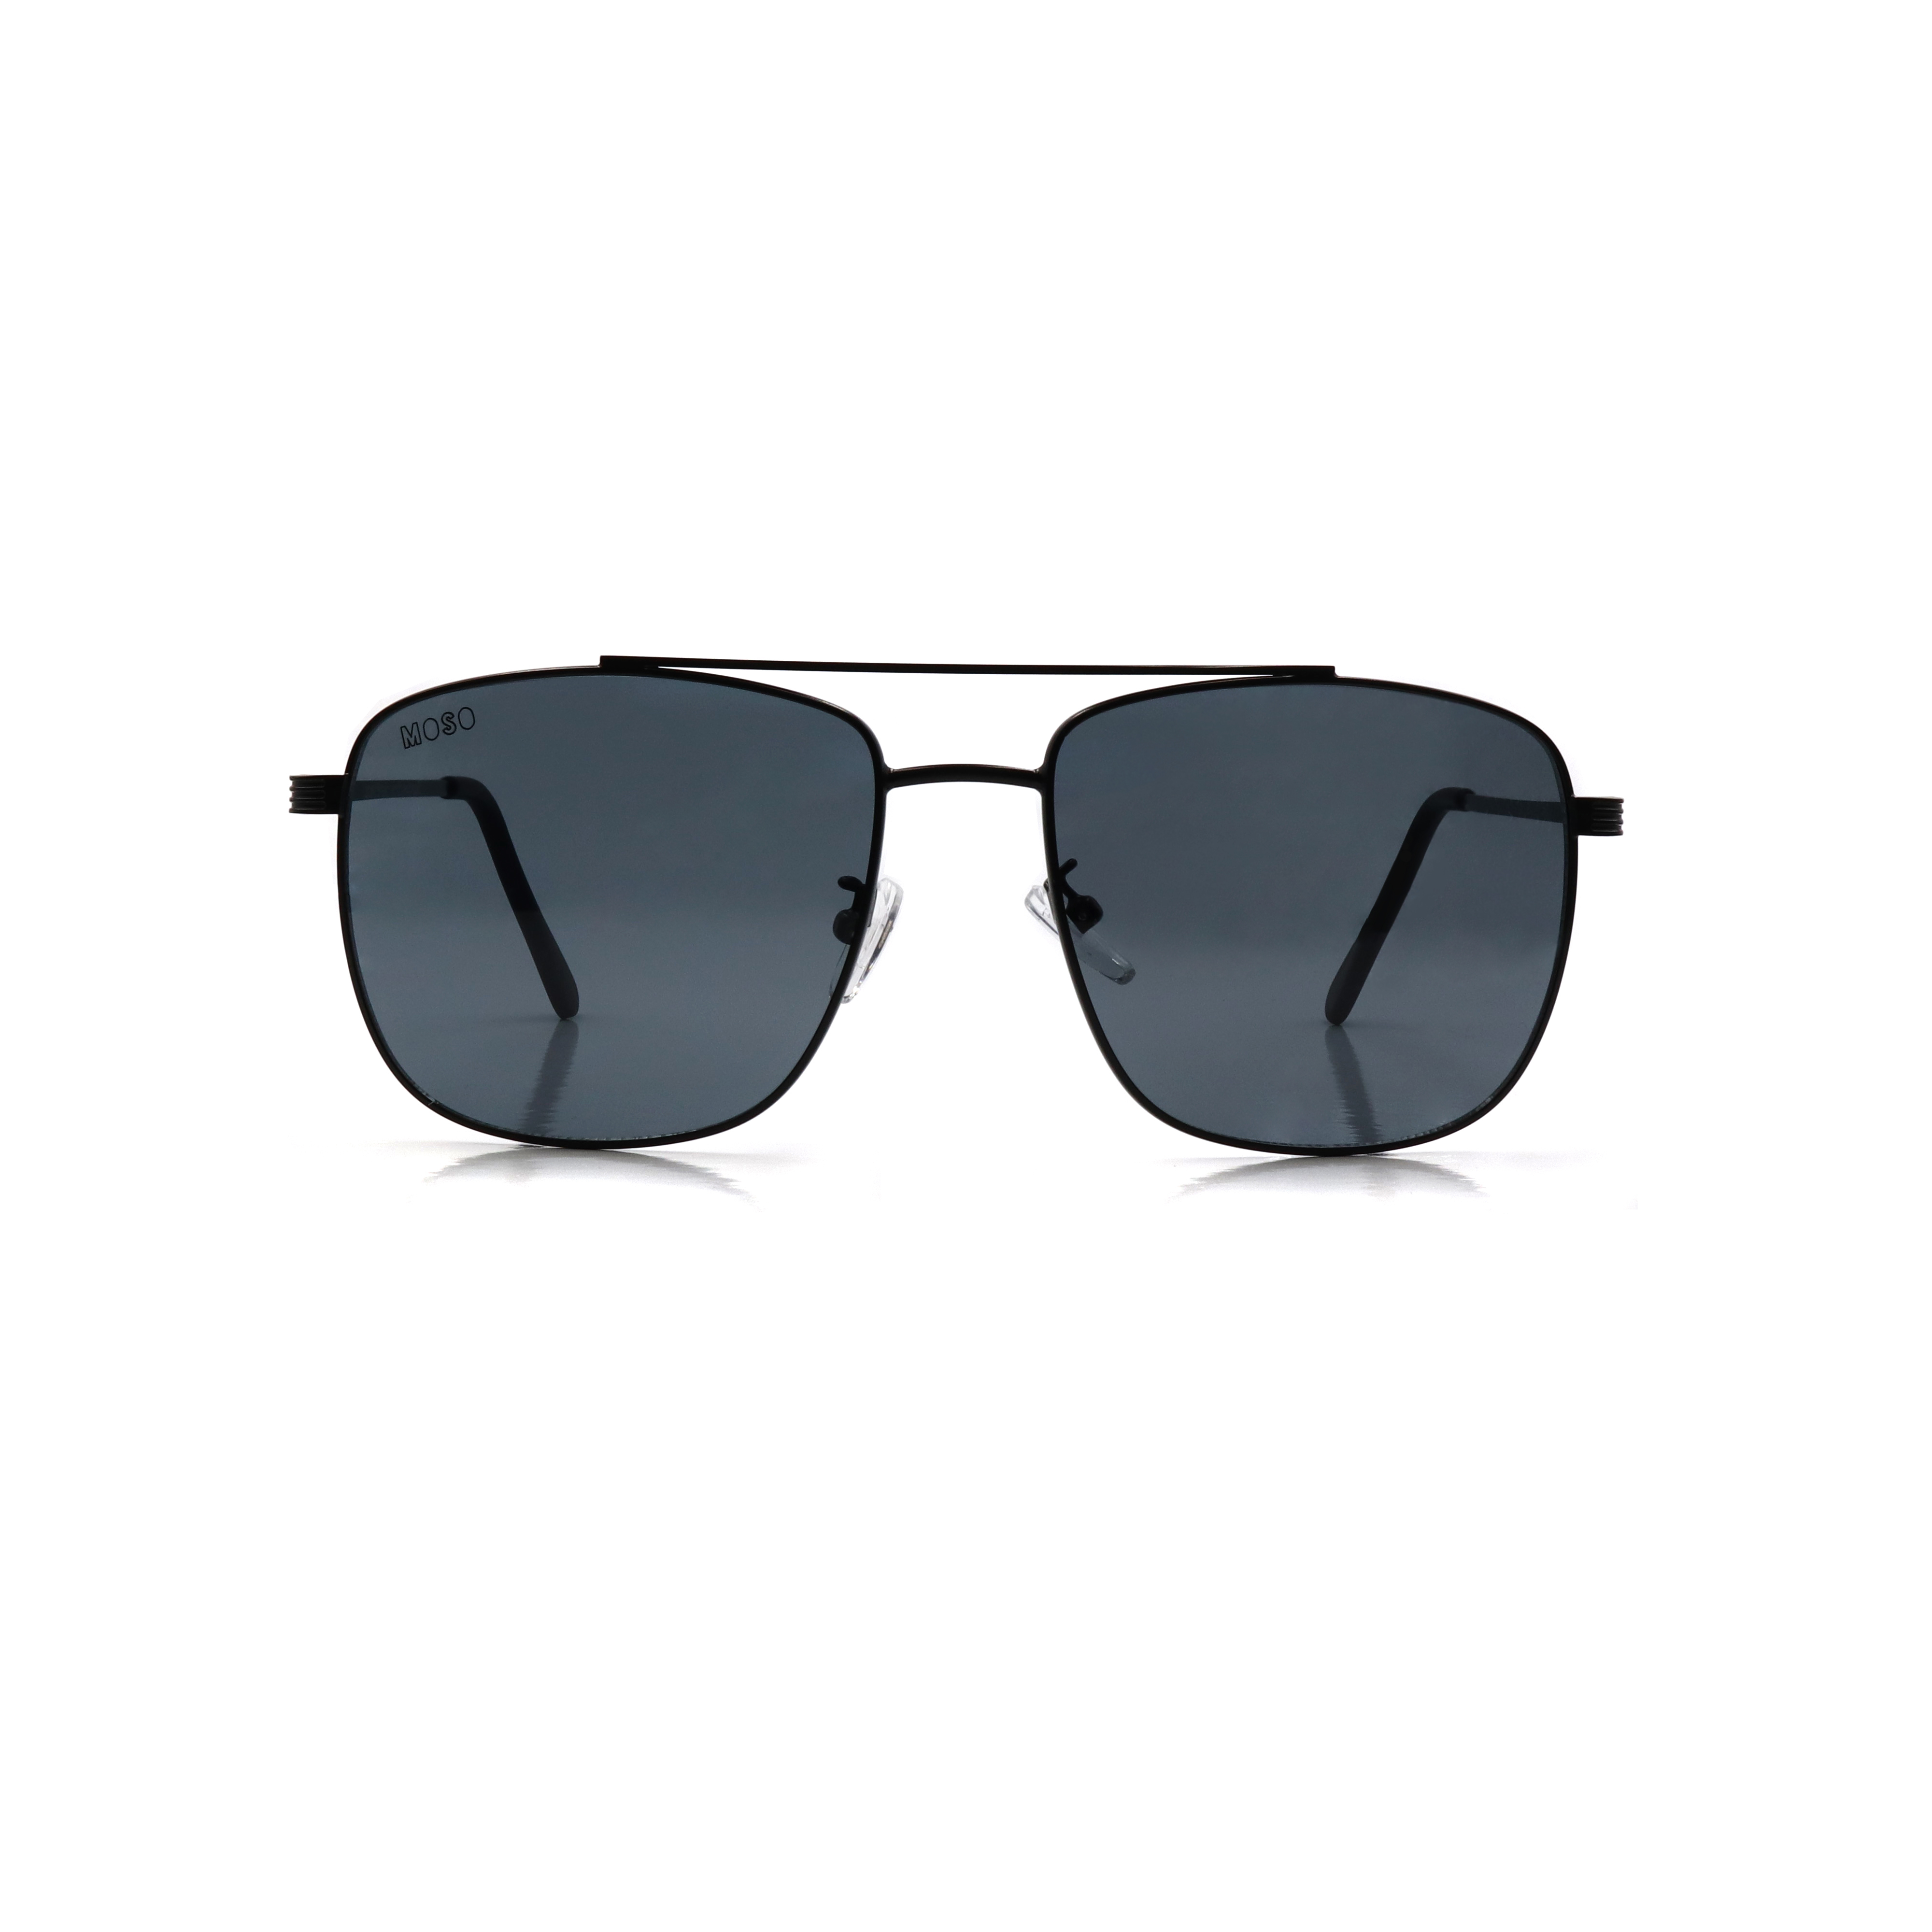 ROZA Polarized HD Sunglasses Men Driver Sun Glasses Men Mirror